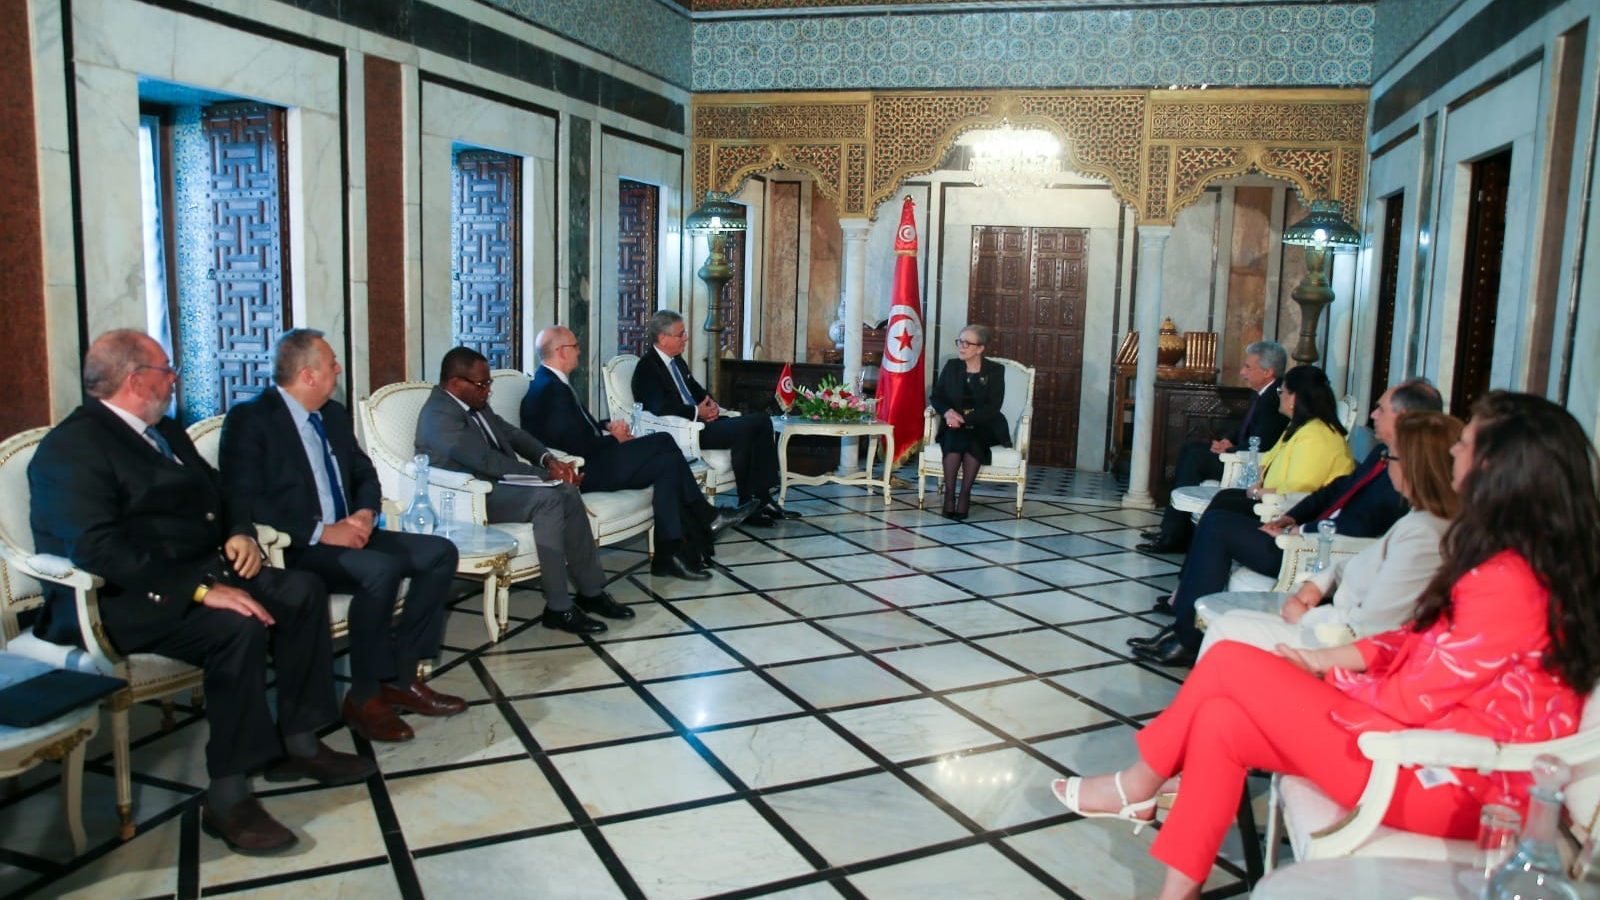 بقيمة نصف مليار دولار سنويا/ البنك الدولي يموّل مشاريع  في تونس